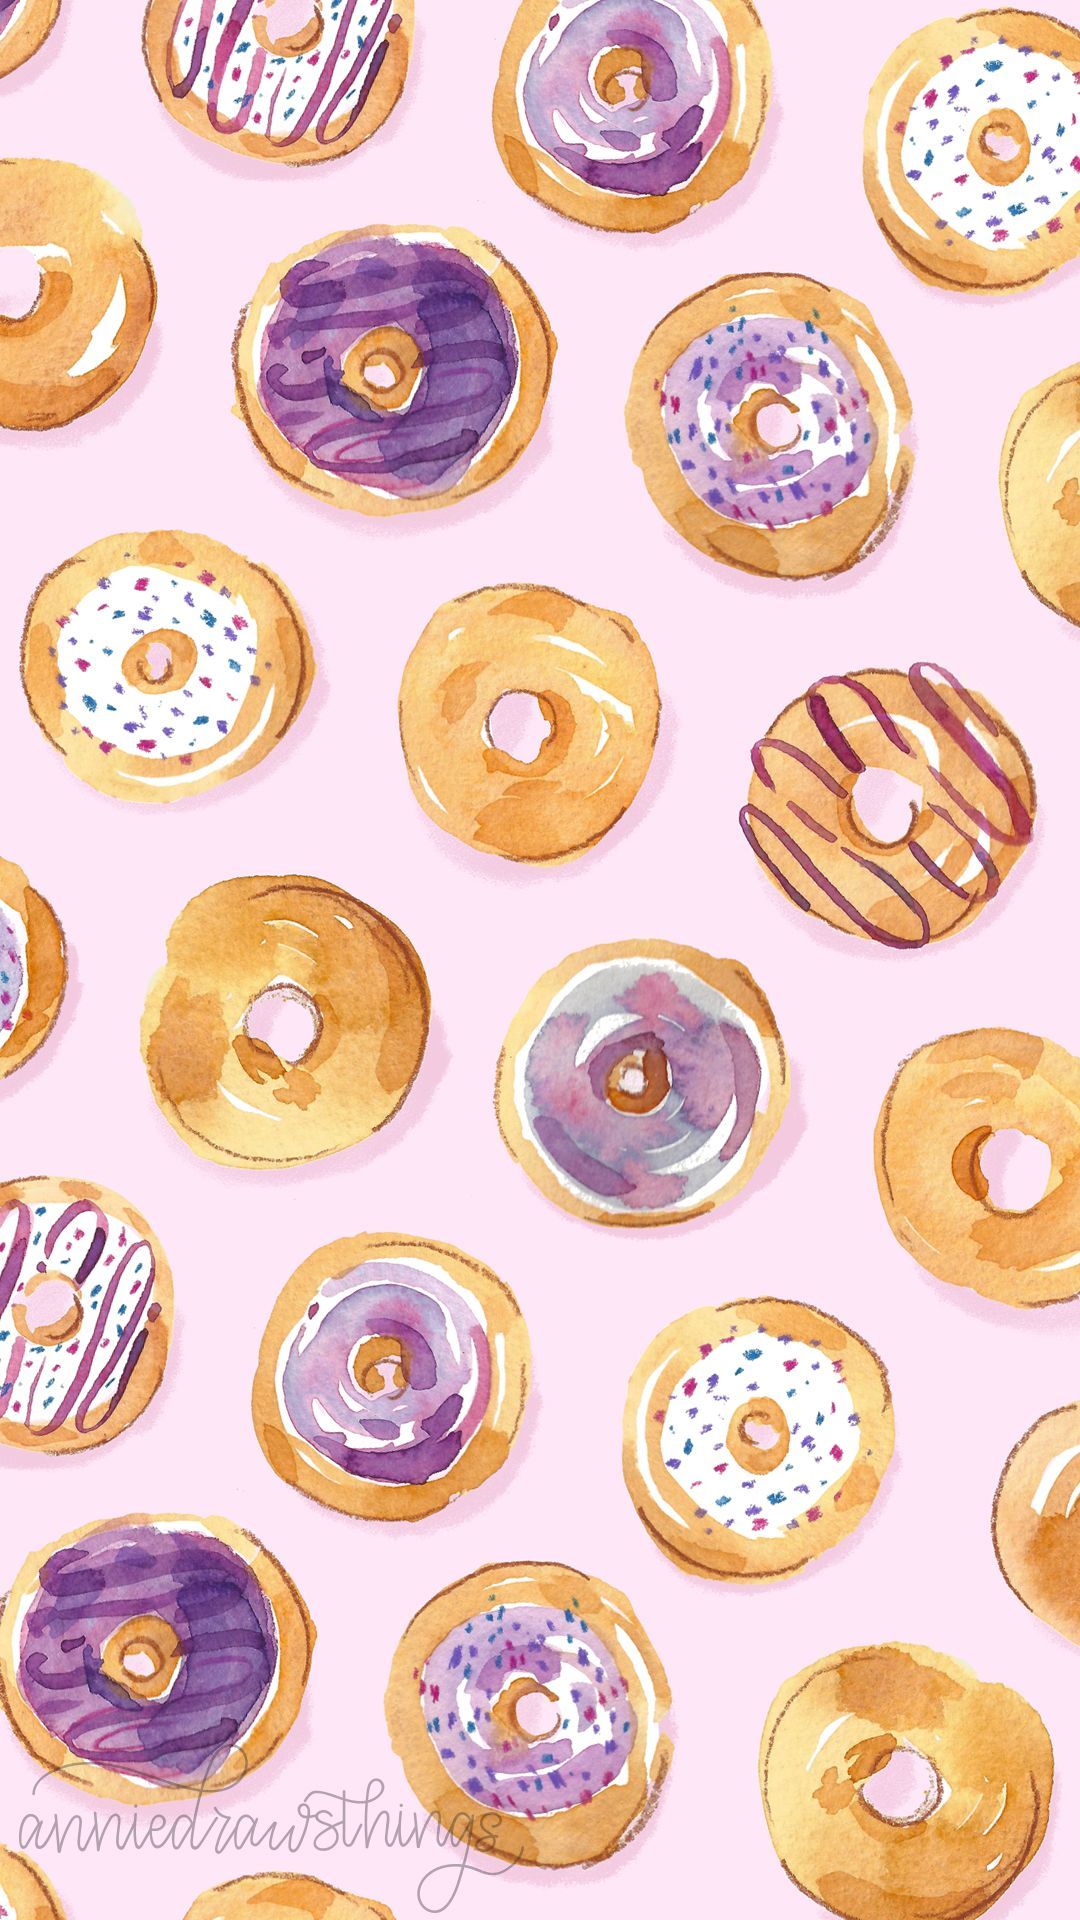 Cute Watercolor Donut Wallpaper Parsons. Cute food wallpaper, Wallpaper, Food wallpaper